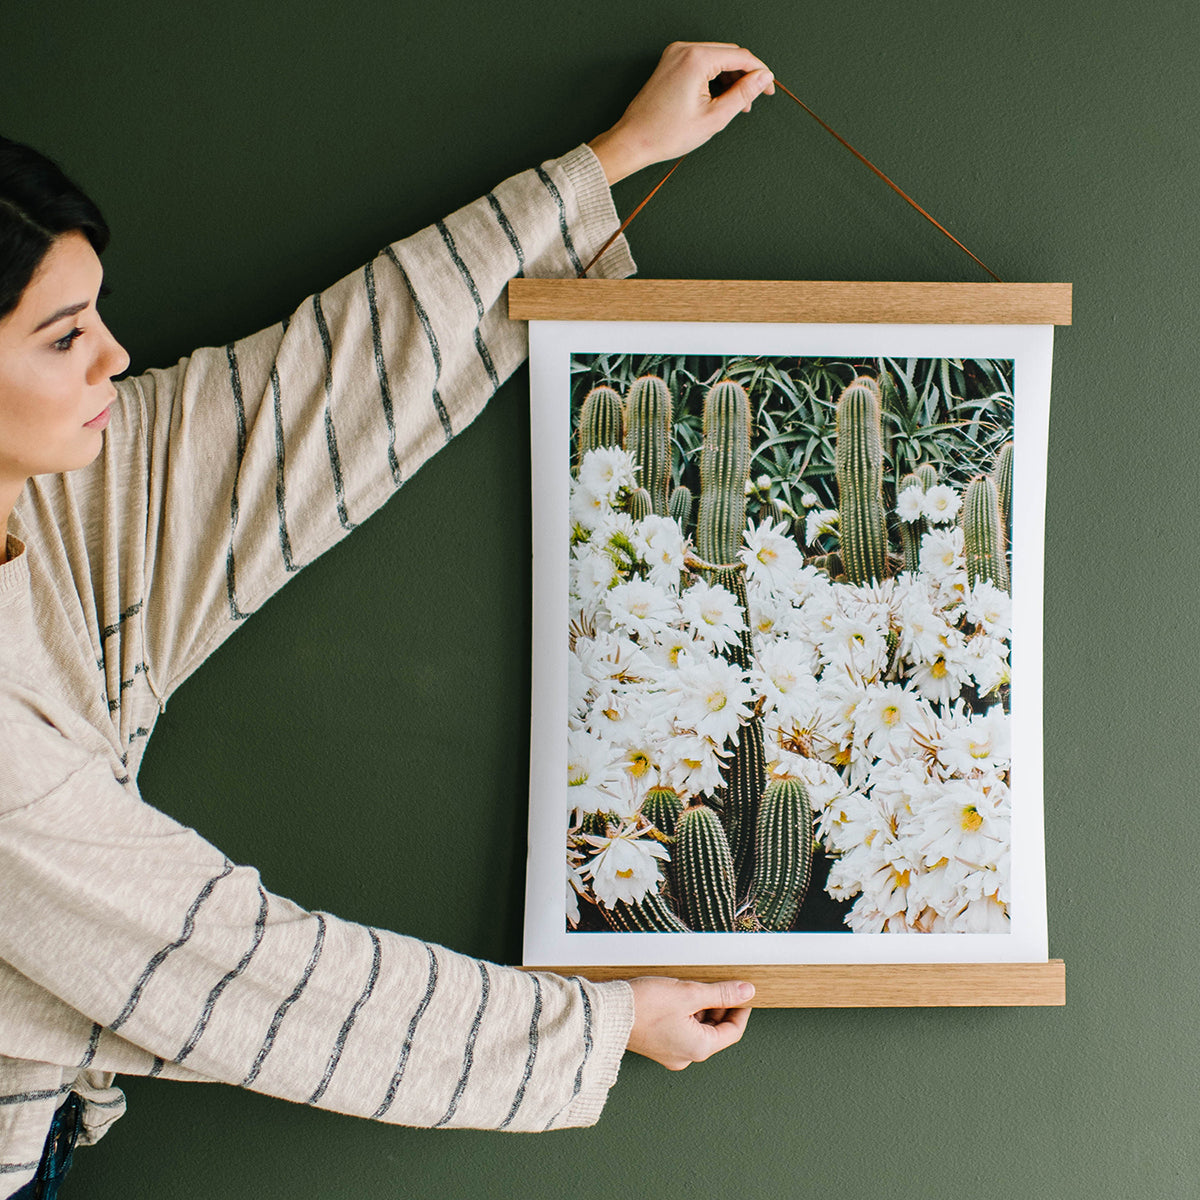 16x24 Picture Frames for A2 Landscape Prints – Hanger Frames